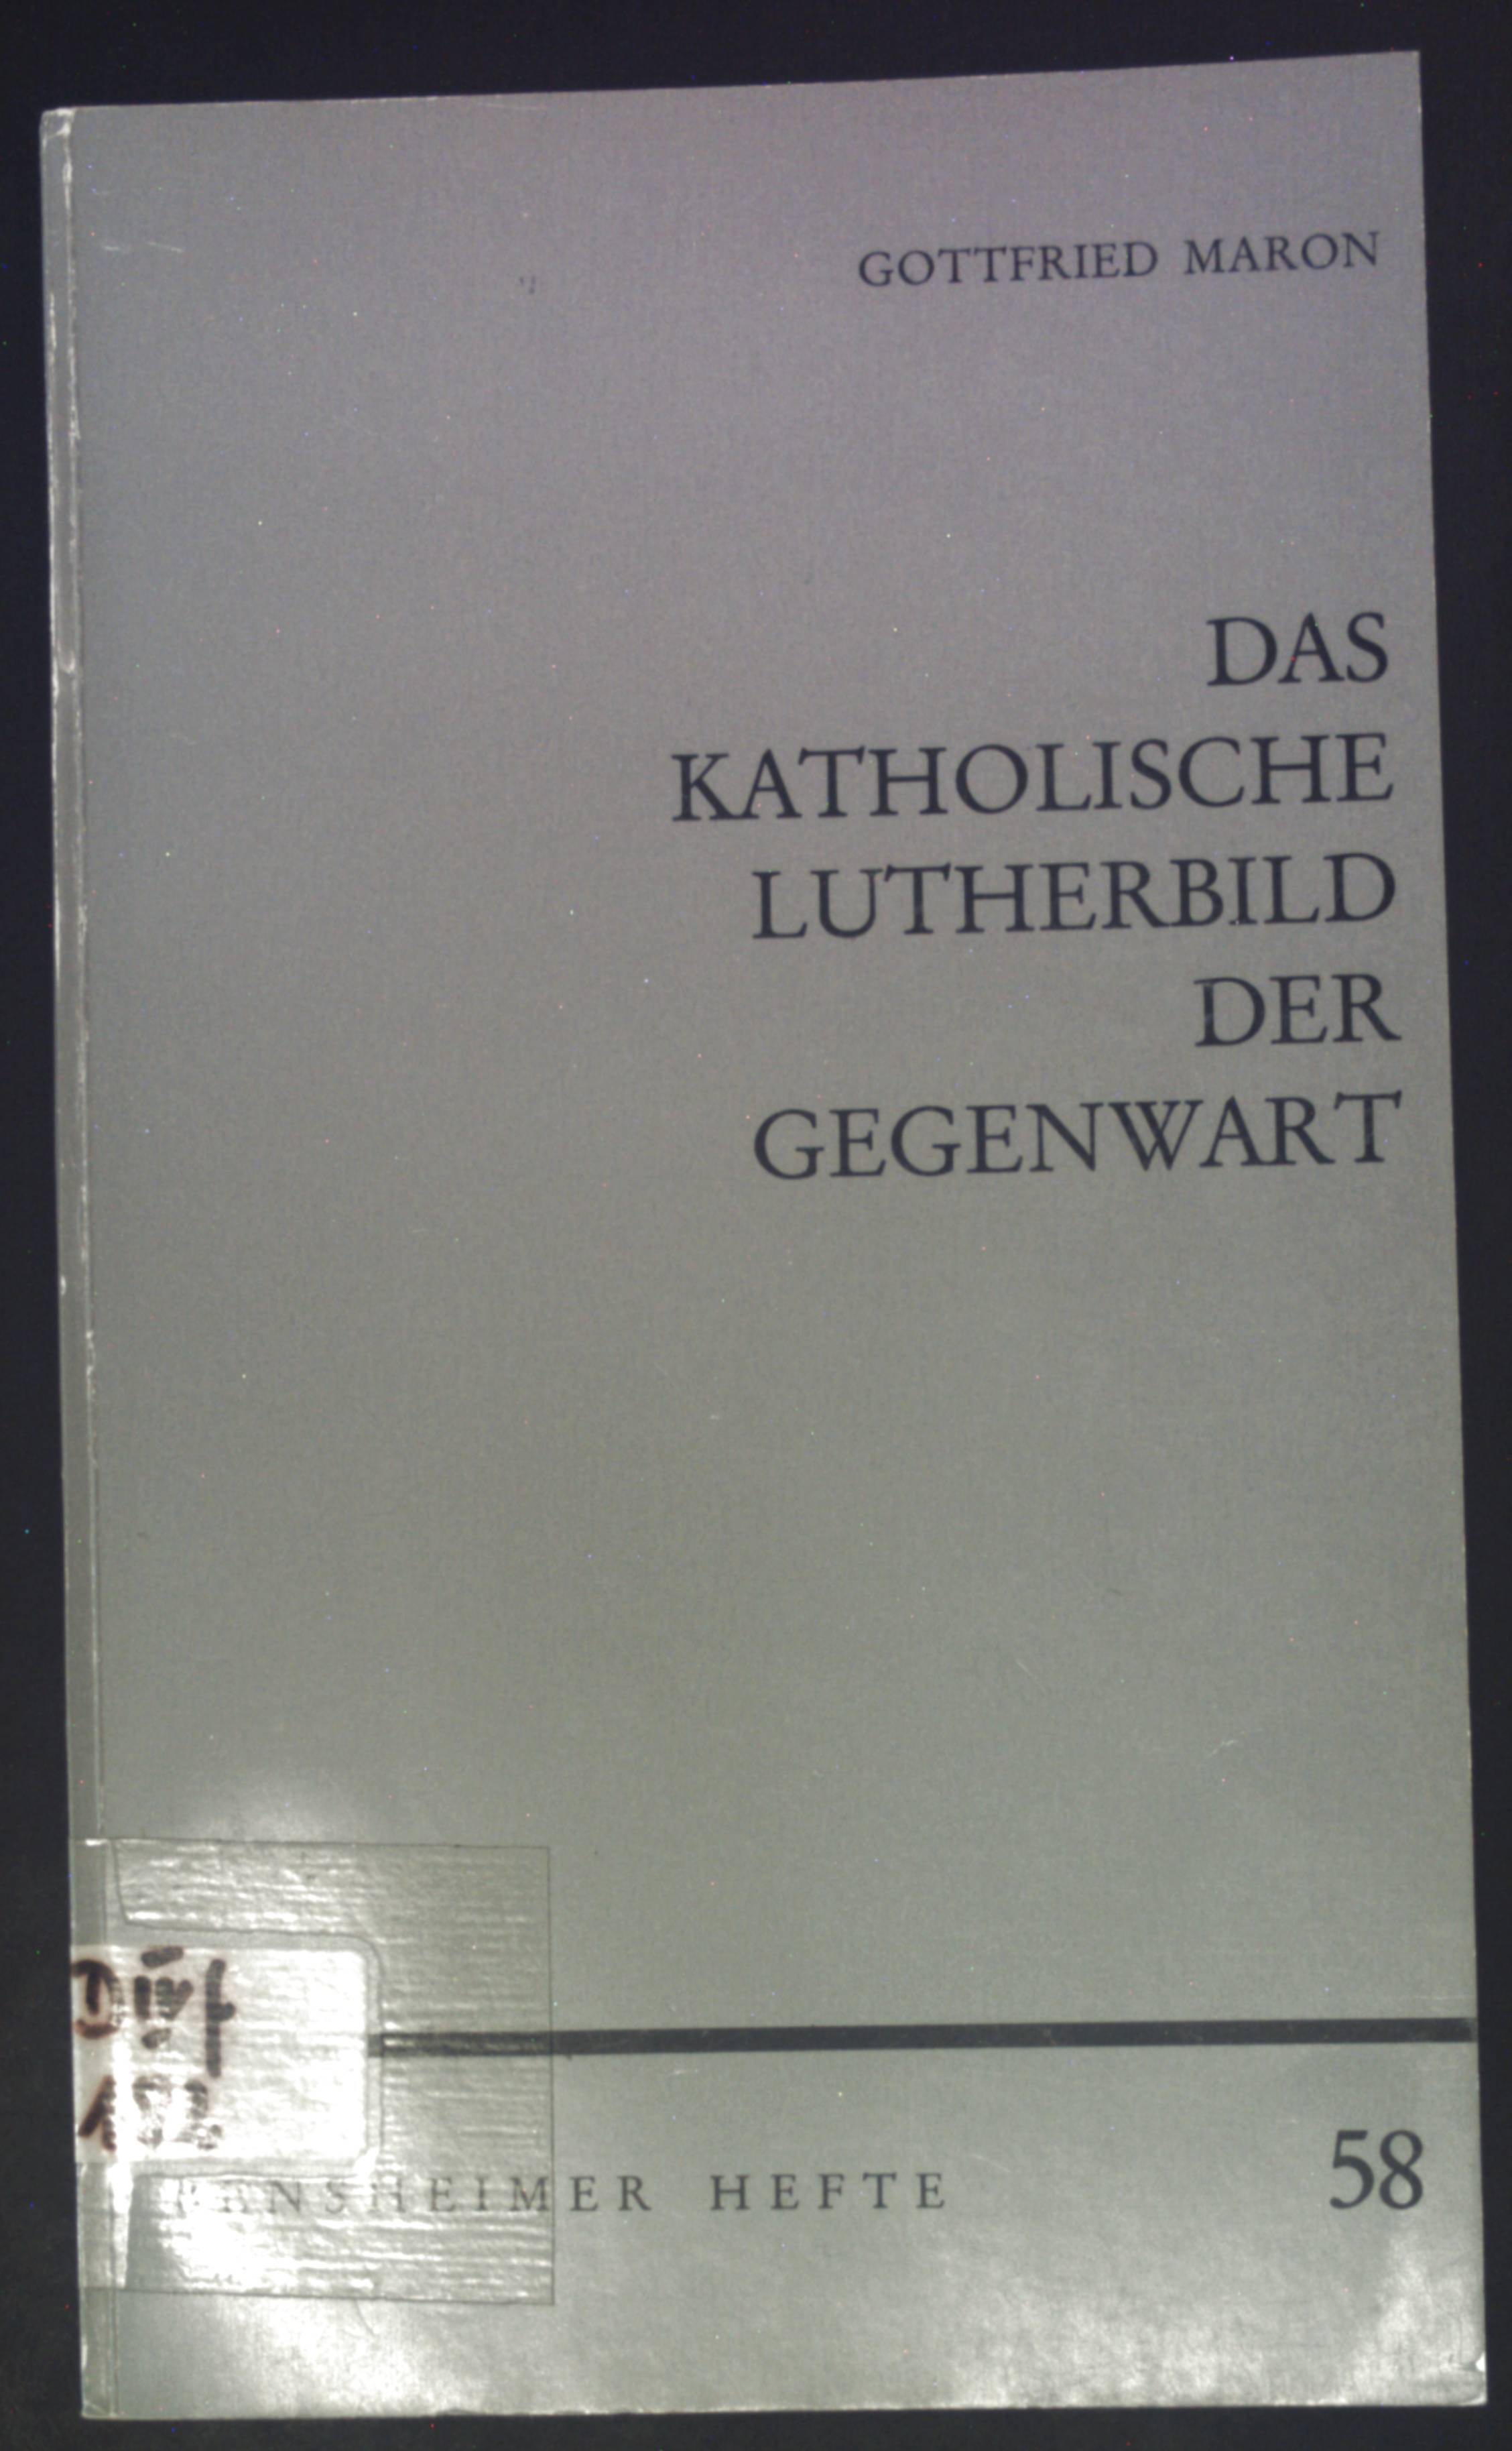 Das katholische Lutherbild der Gegenwart : Anmerkungen u. Anfragen. Bensheimer Hefte ; H. 58 - Maron, Gottfried